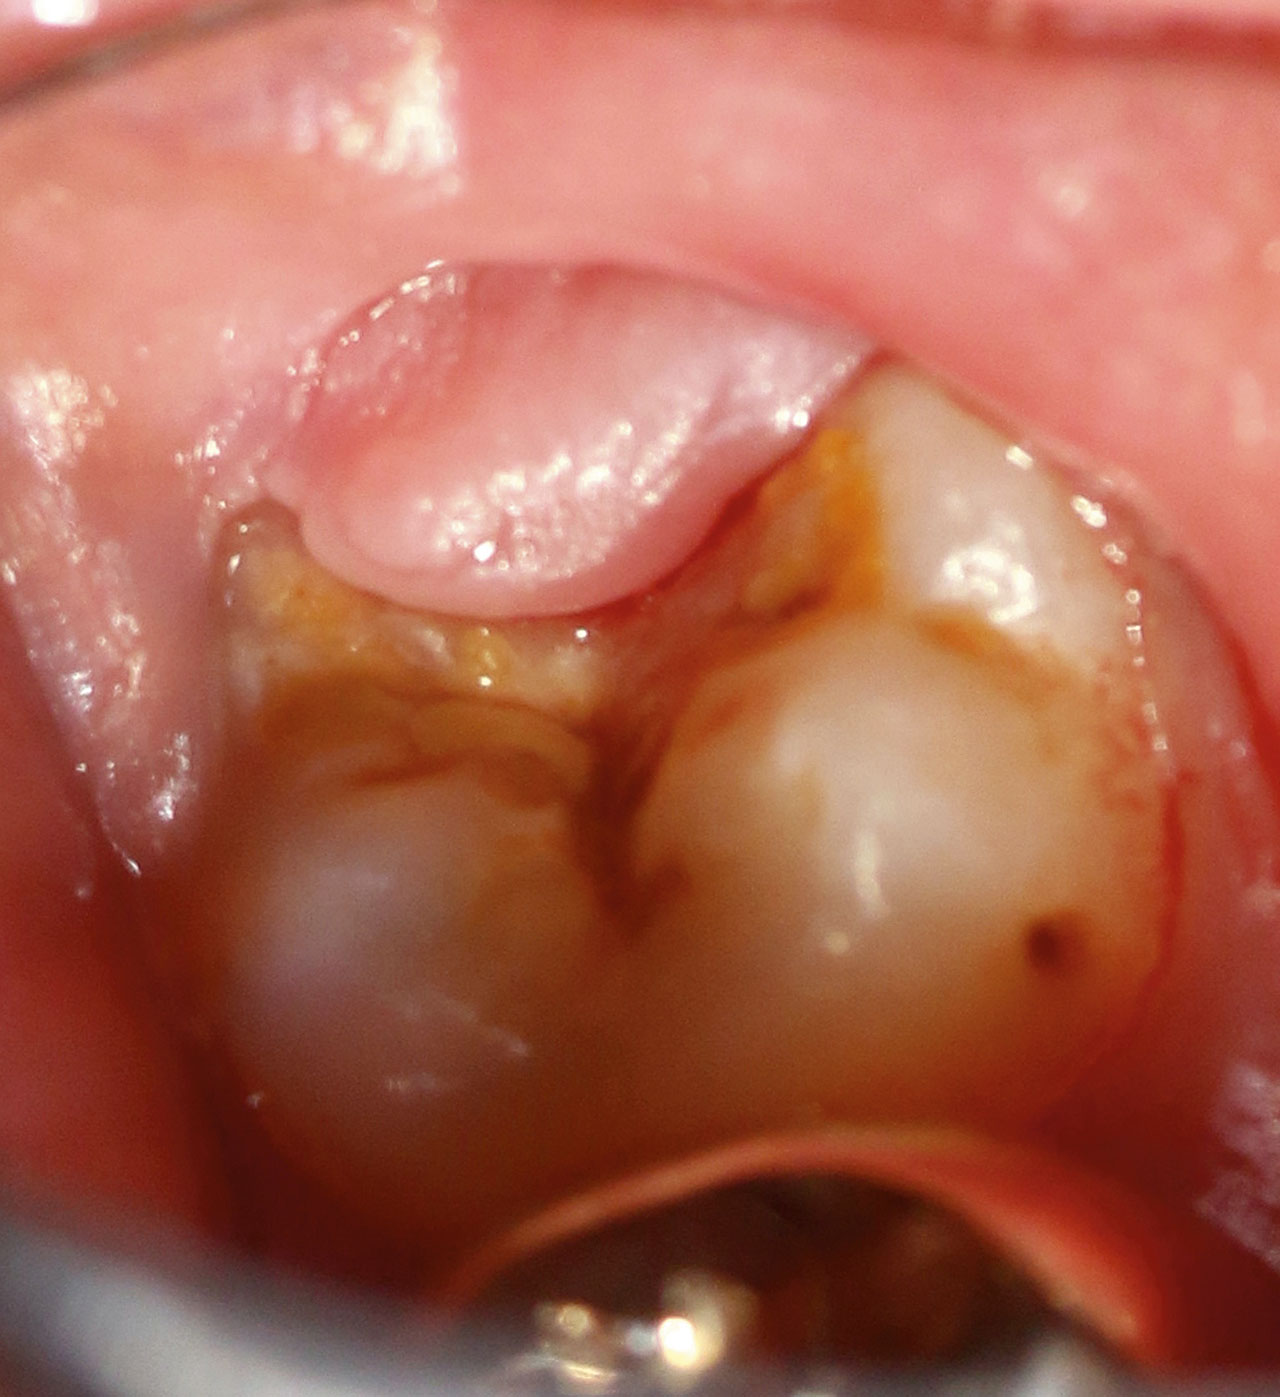 Abb. 7 Gewebelappen (Operculum) über dem teilweise durchgebrochenen Zahn 38. Der Patient beklagte rezidivierende Entzündungen des überhängenden Gewebes